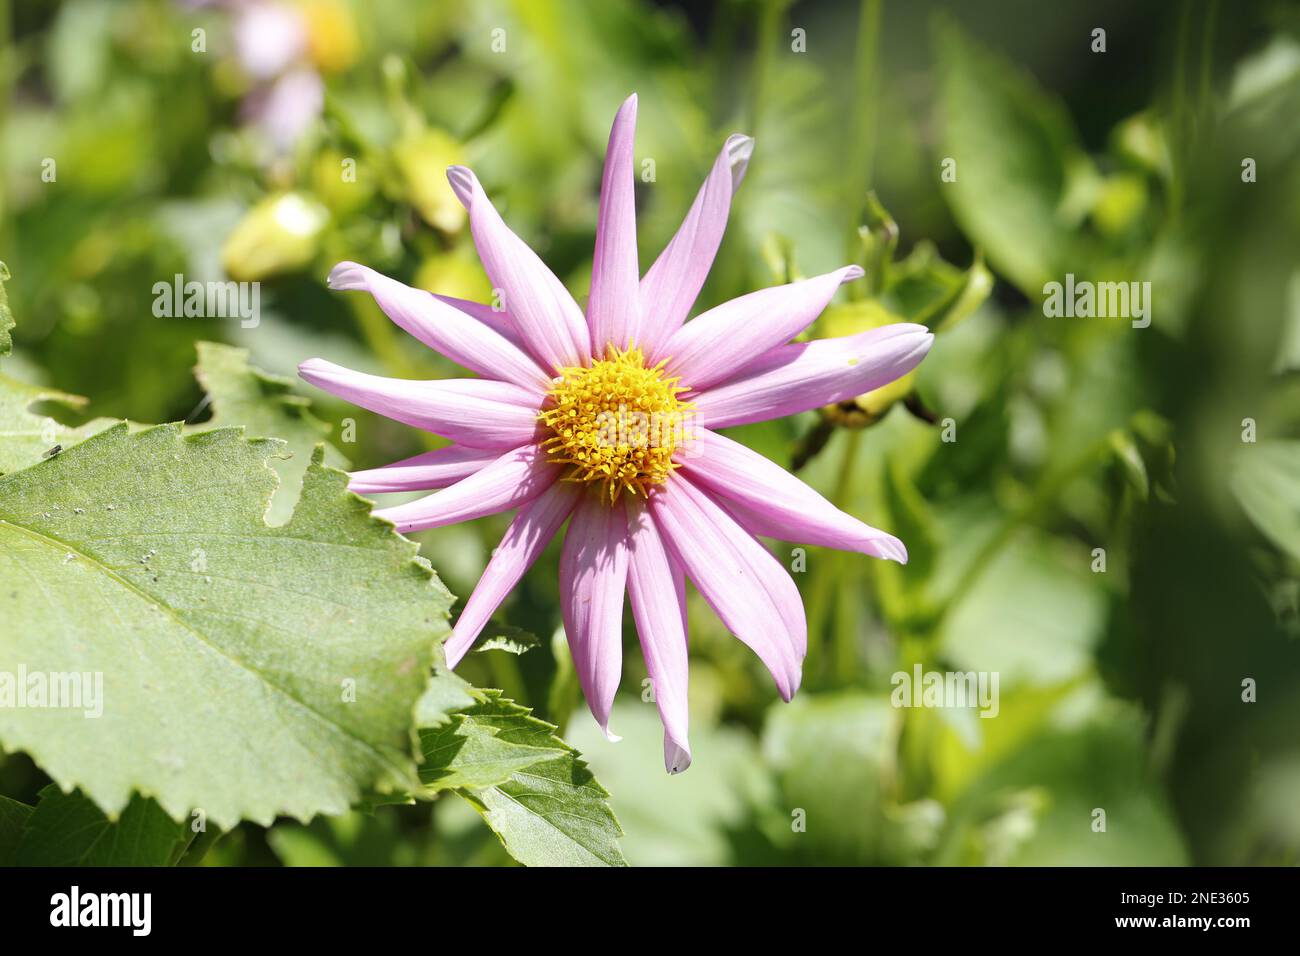 Violette Blume mit gelbem Inneren - Violet flower with yellow heart Stock Photo